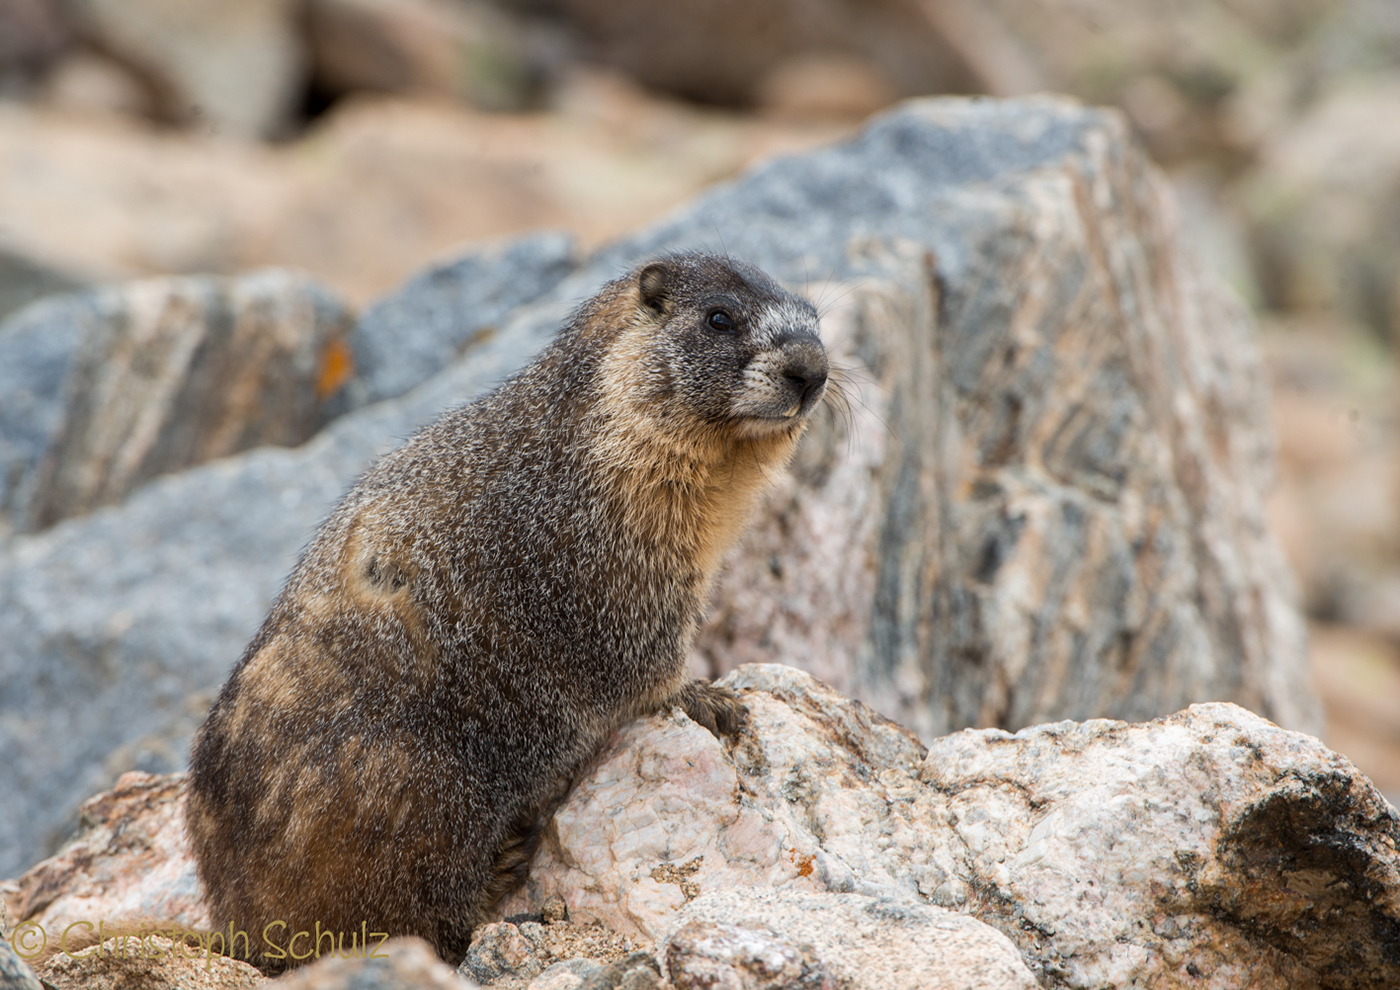 Rocky mountains Rocky Mountains usa Colorado hirsche deer Murmeltier marmot mouse